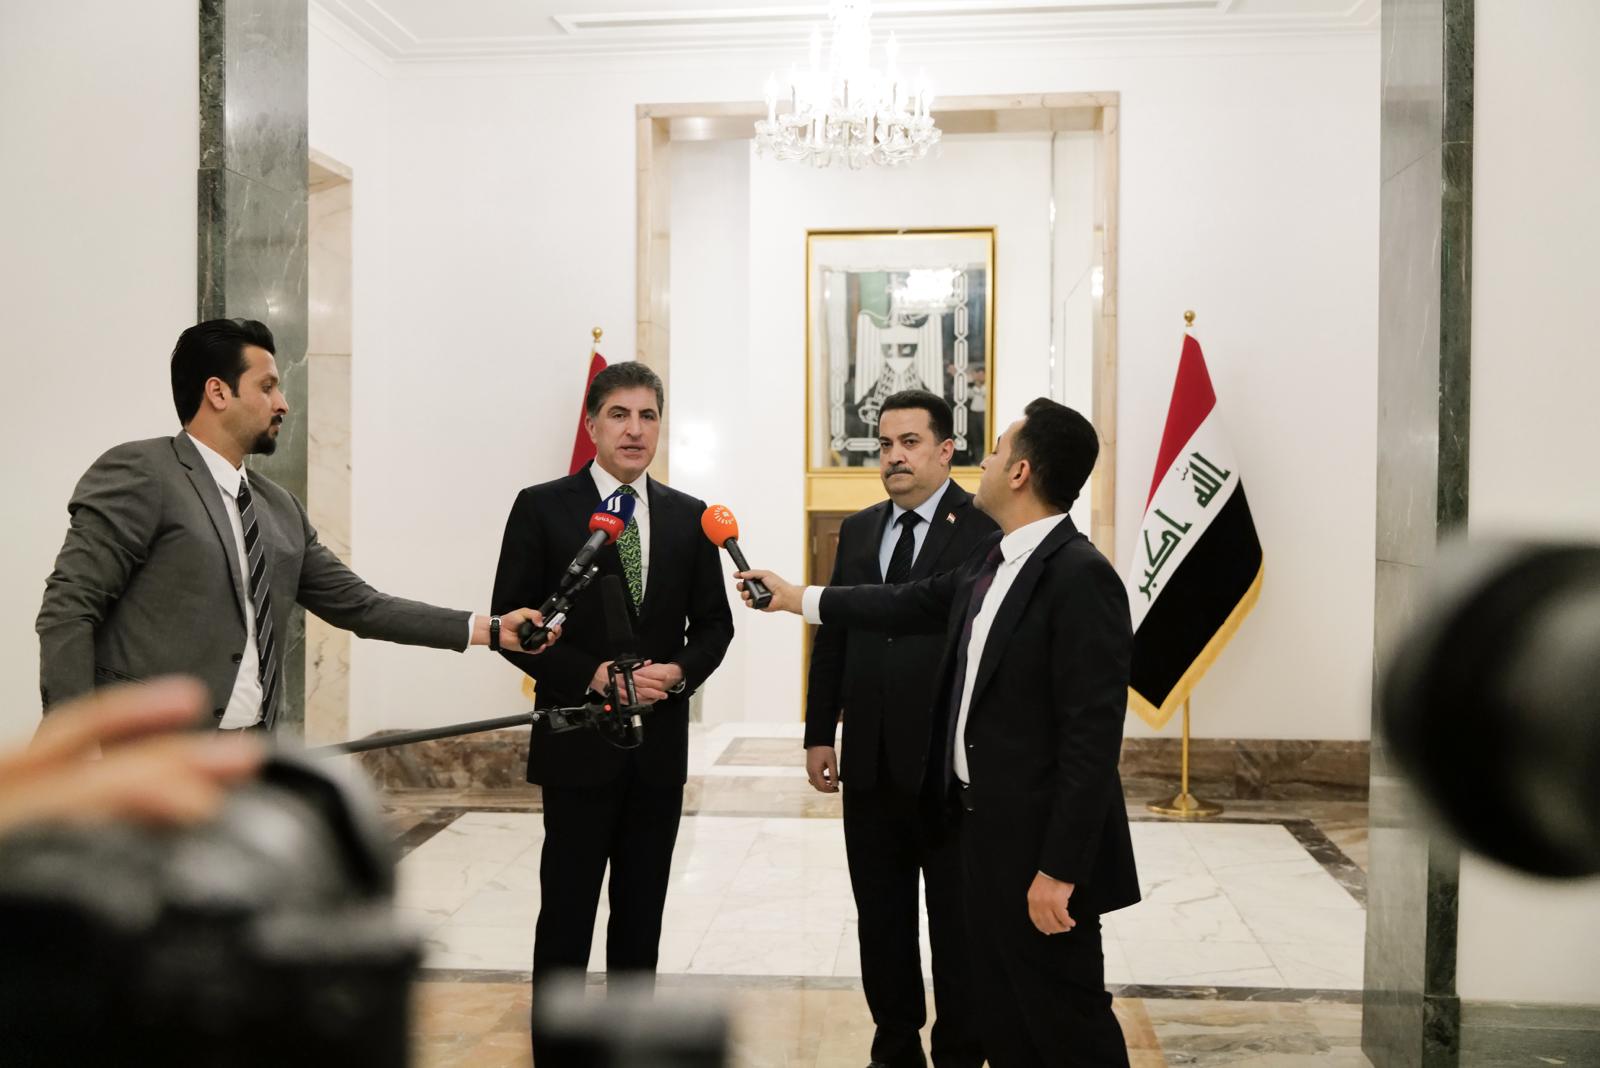 President Barzani and PM Al-Sudani forge preliminary oil agreement in Baghdad talks